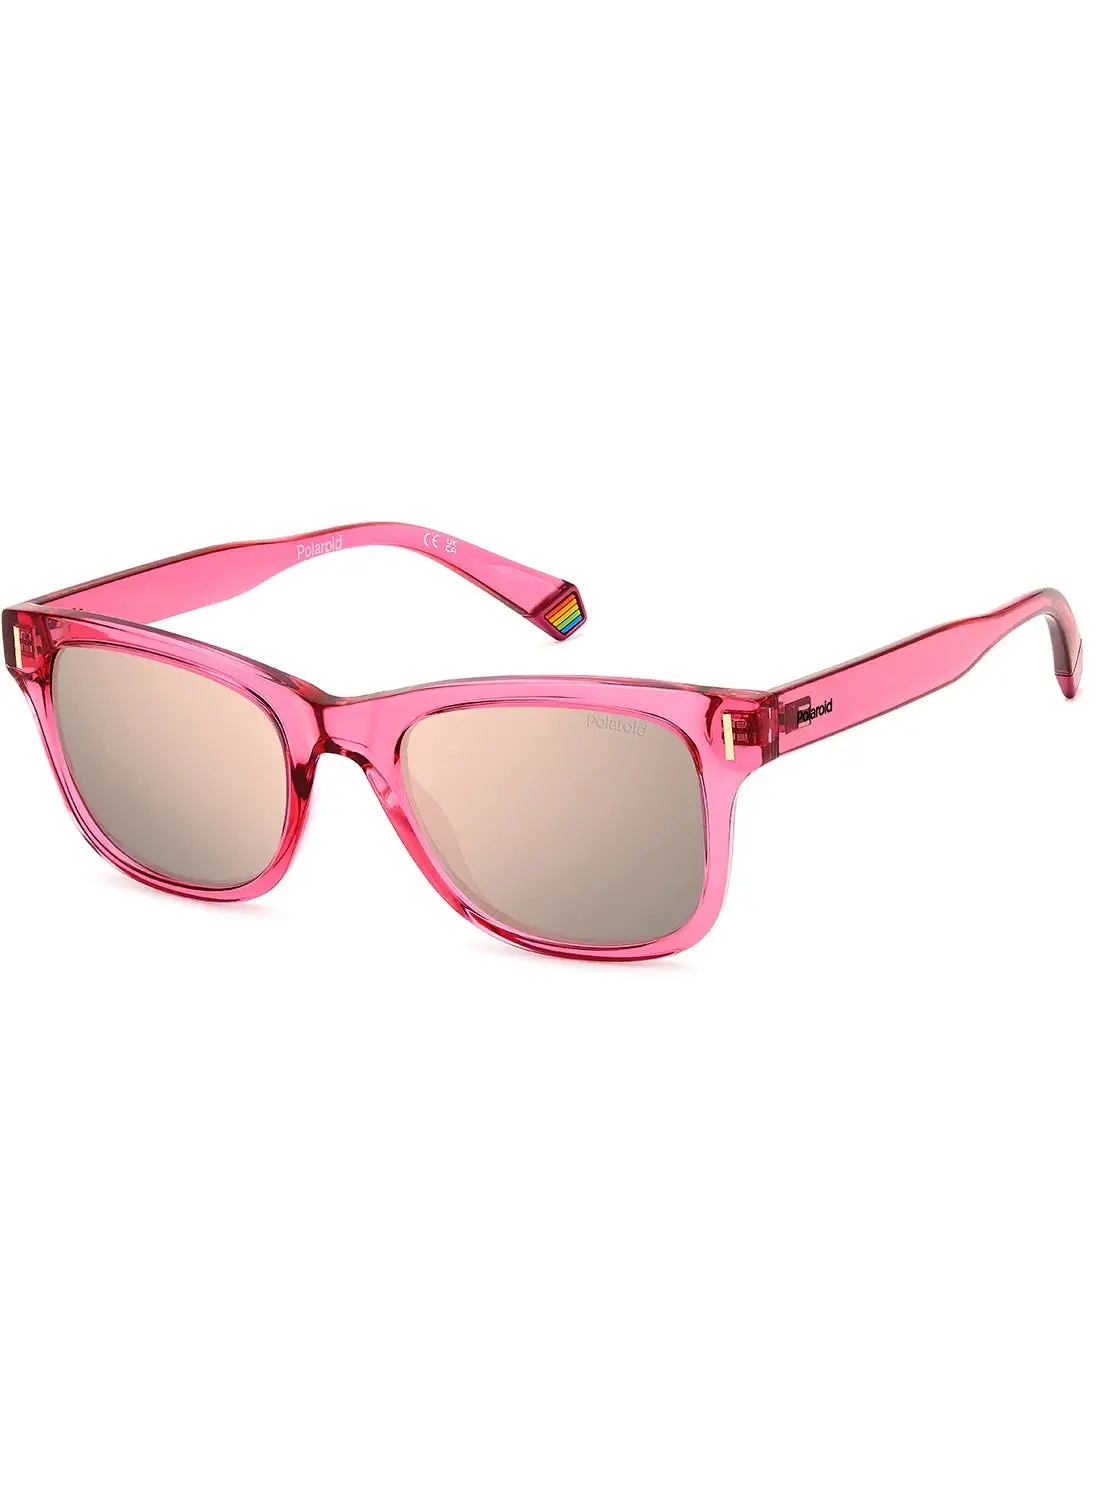 Polaroid Unisex Polarized Rectangular Sunglasses - Pld 6206/S Pink Millimeter - Lens Size: 51 Mm